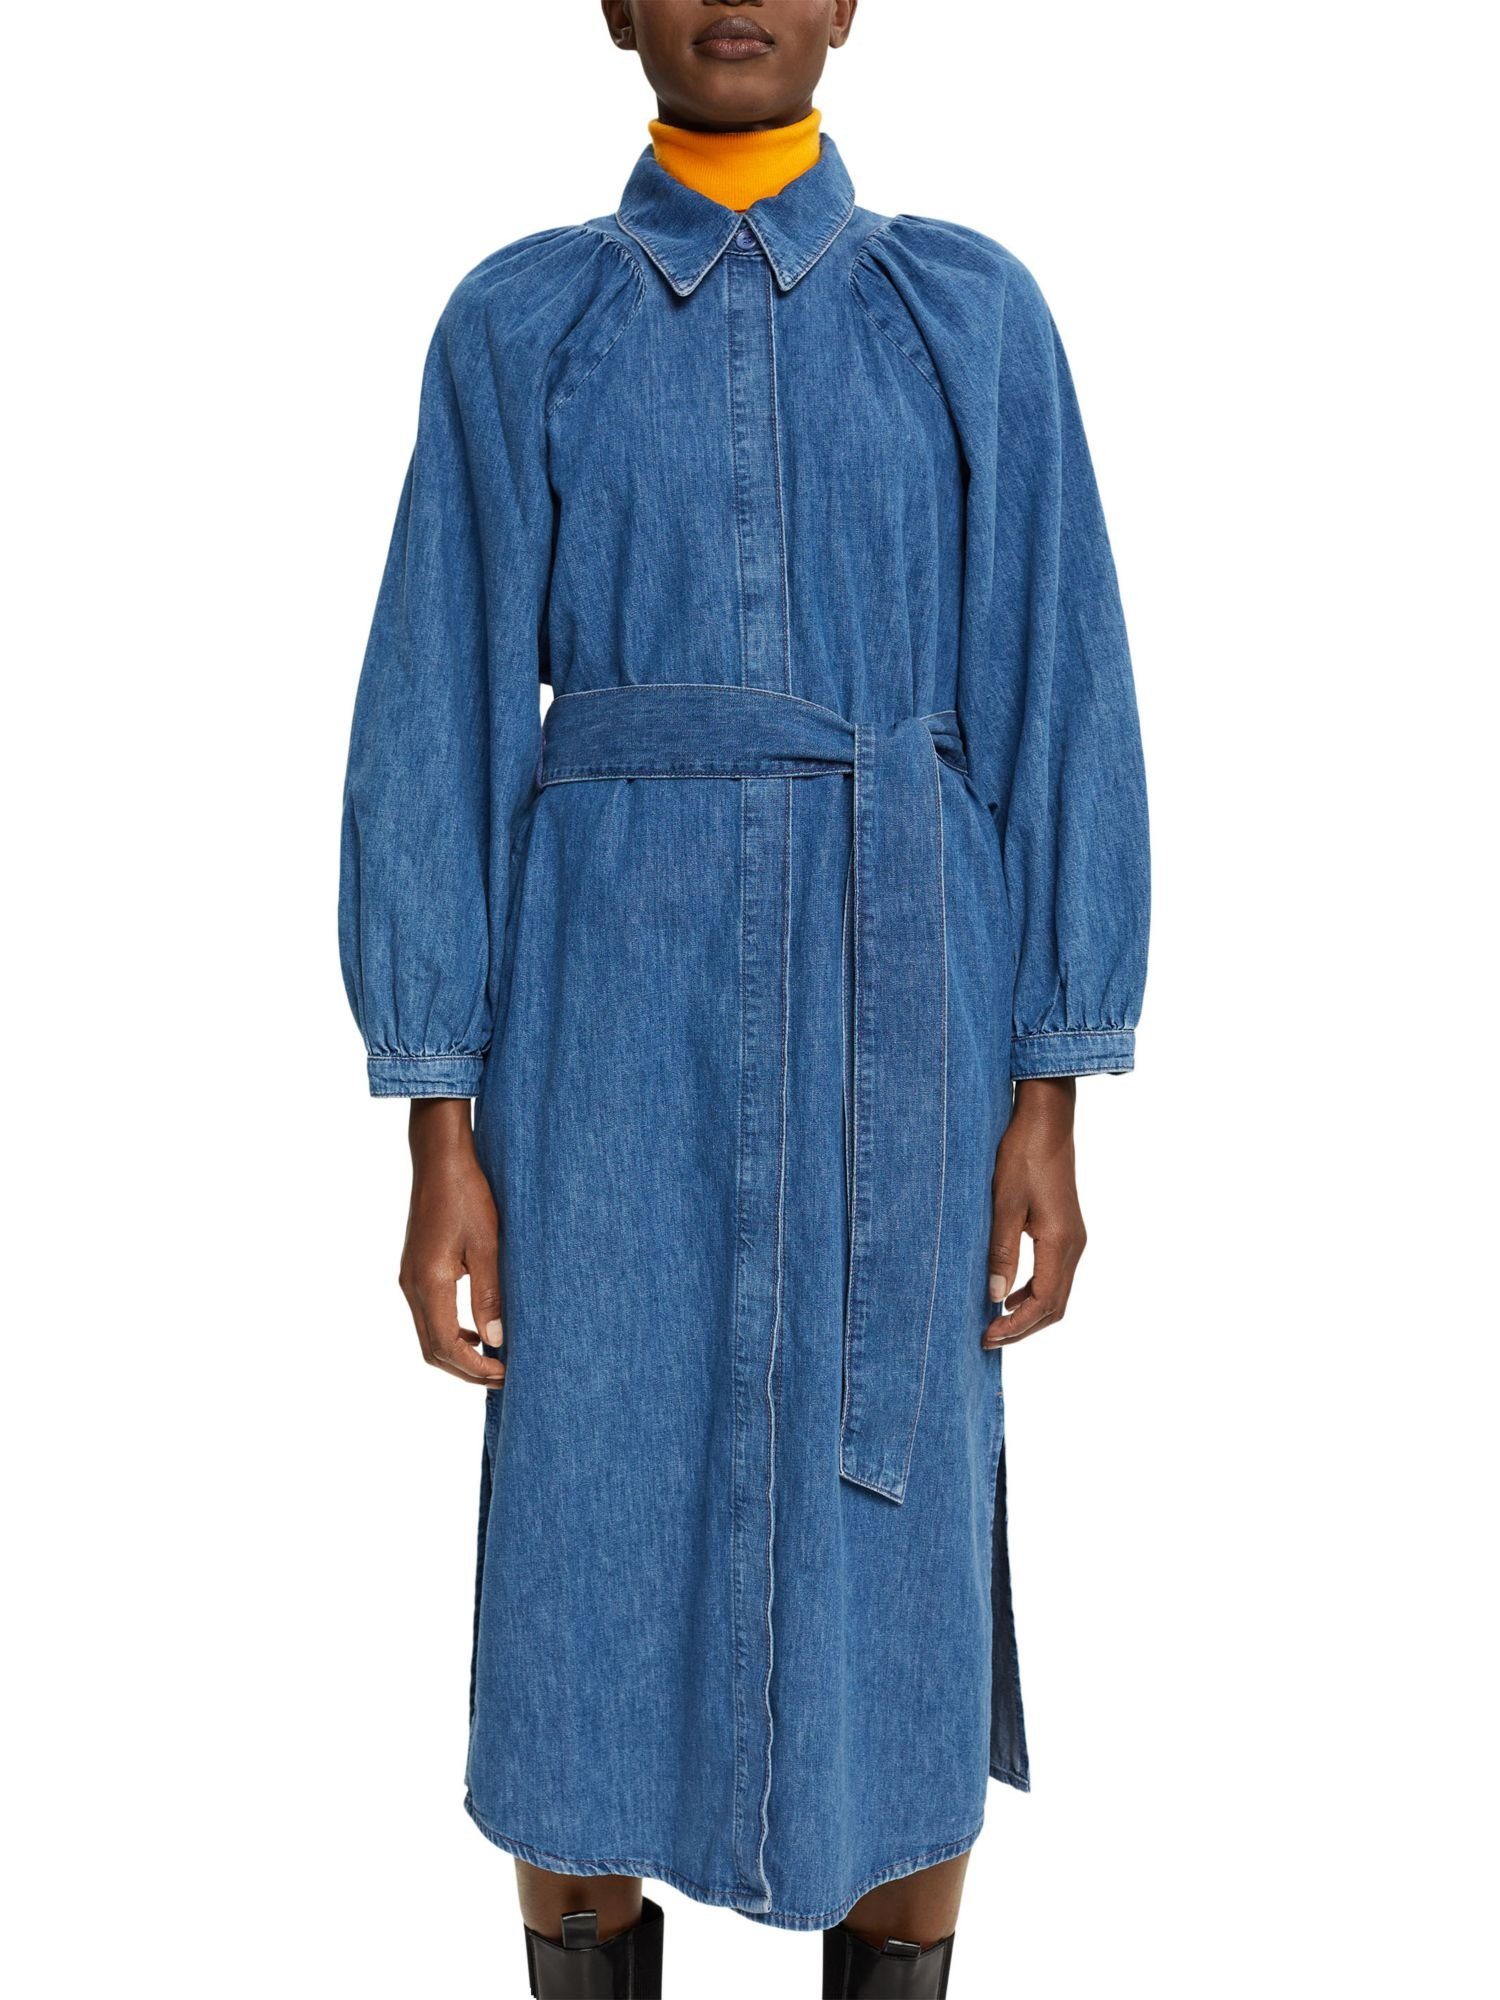 Esprit Collection Jeanskleid »Denim-Kleid« kaufen | OTTO